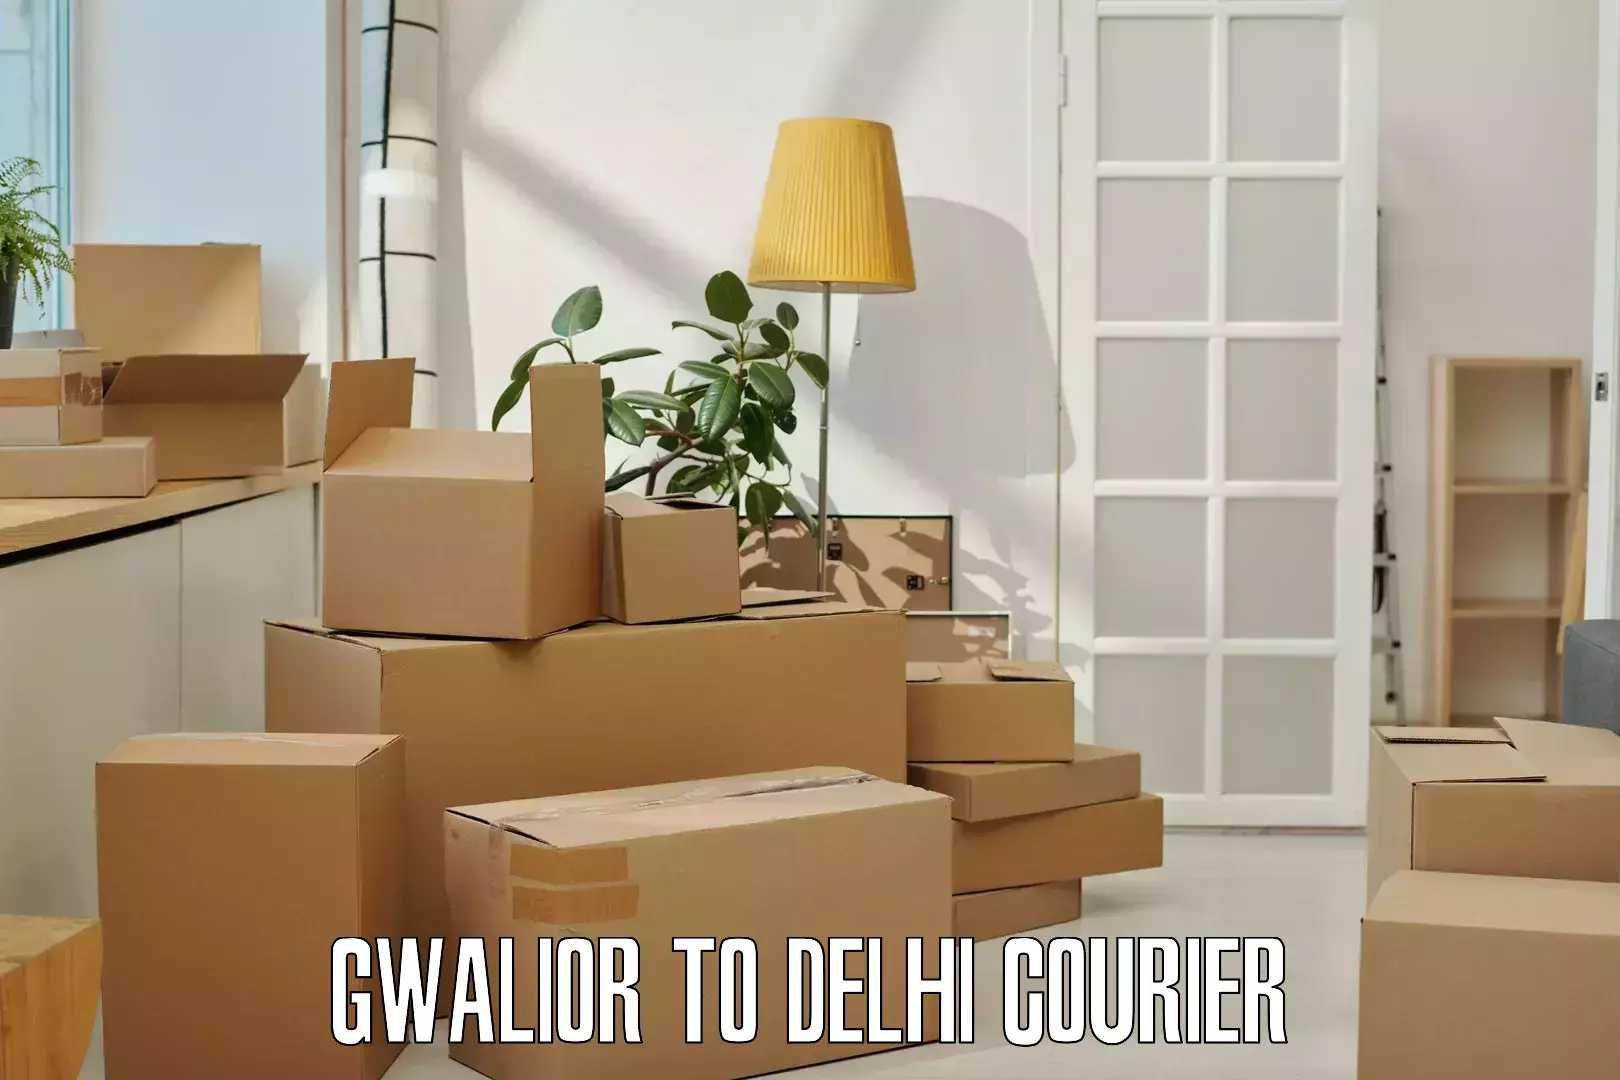 Courier service comparison Gwalior to Delhi